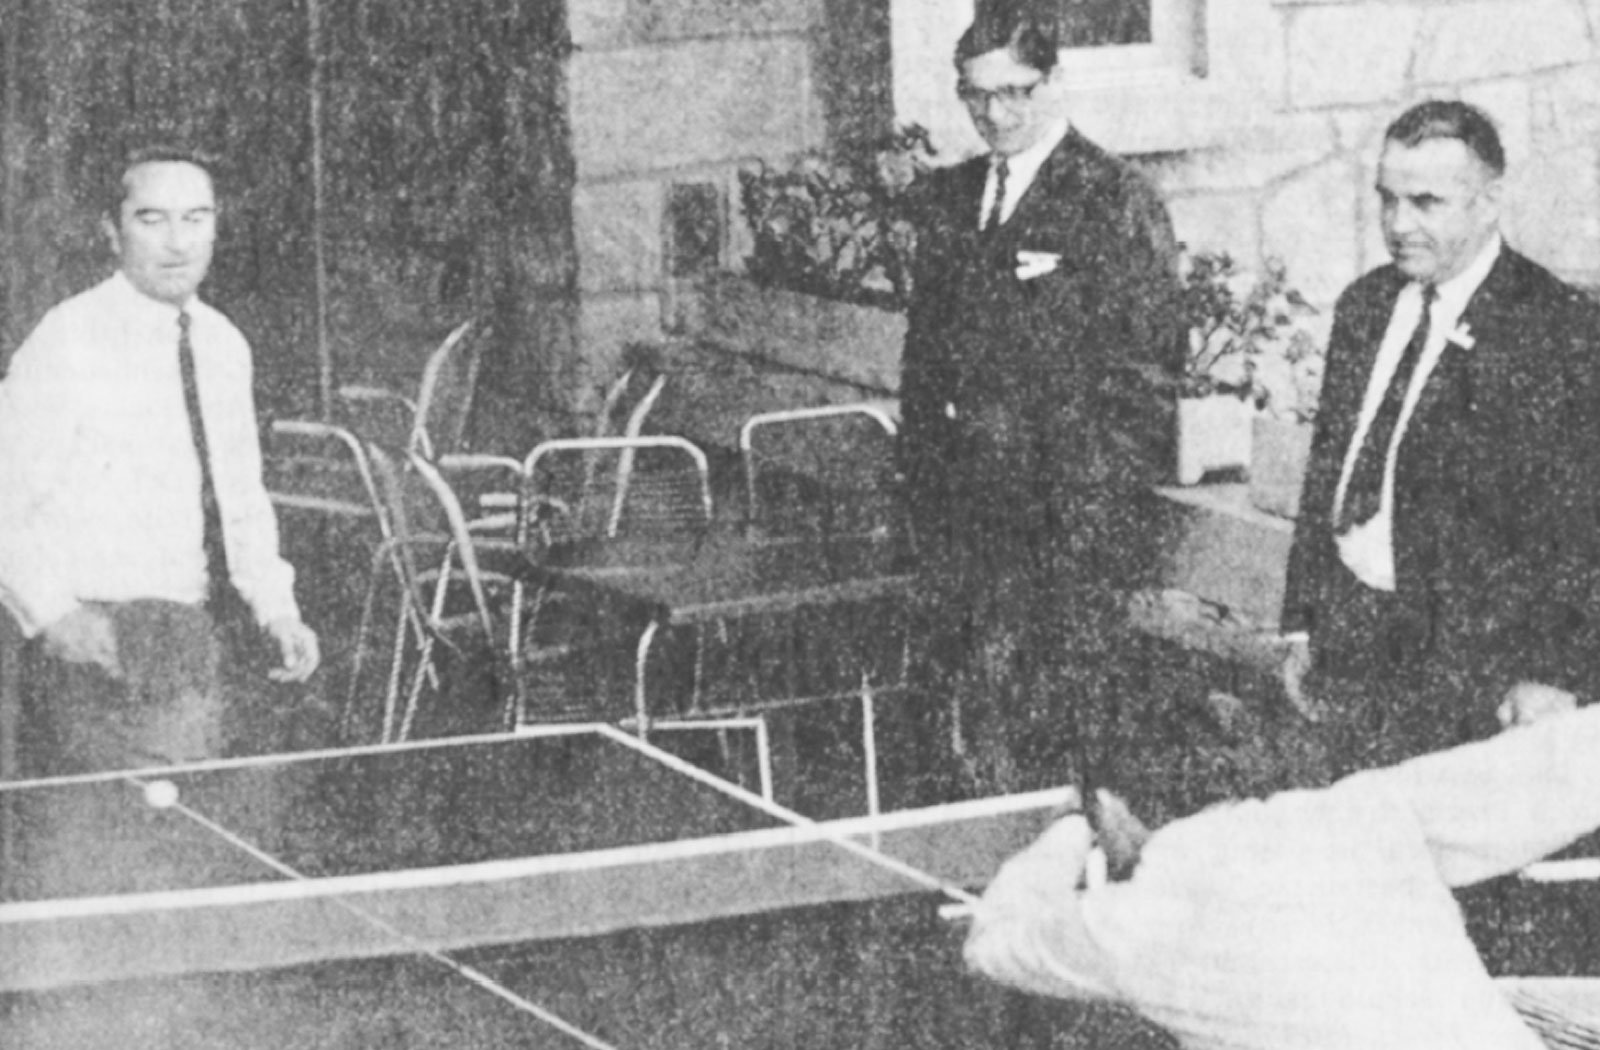 Deux hommes jouent au ping-pong pendant que deux autres hommes les regardent.